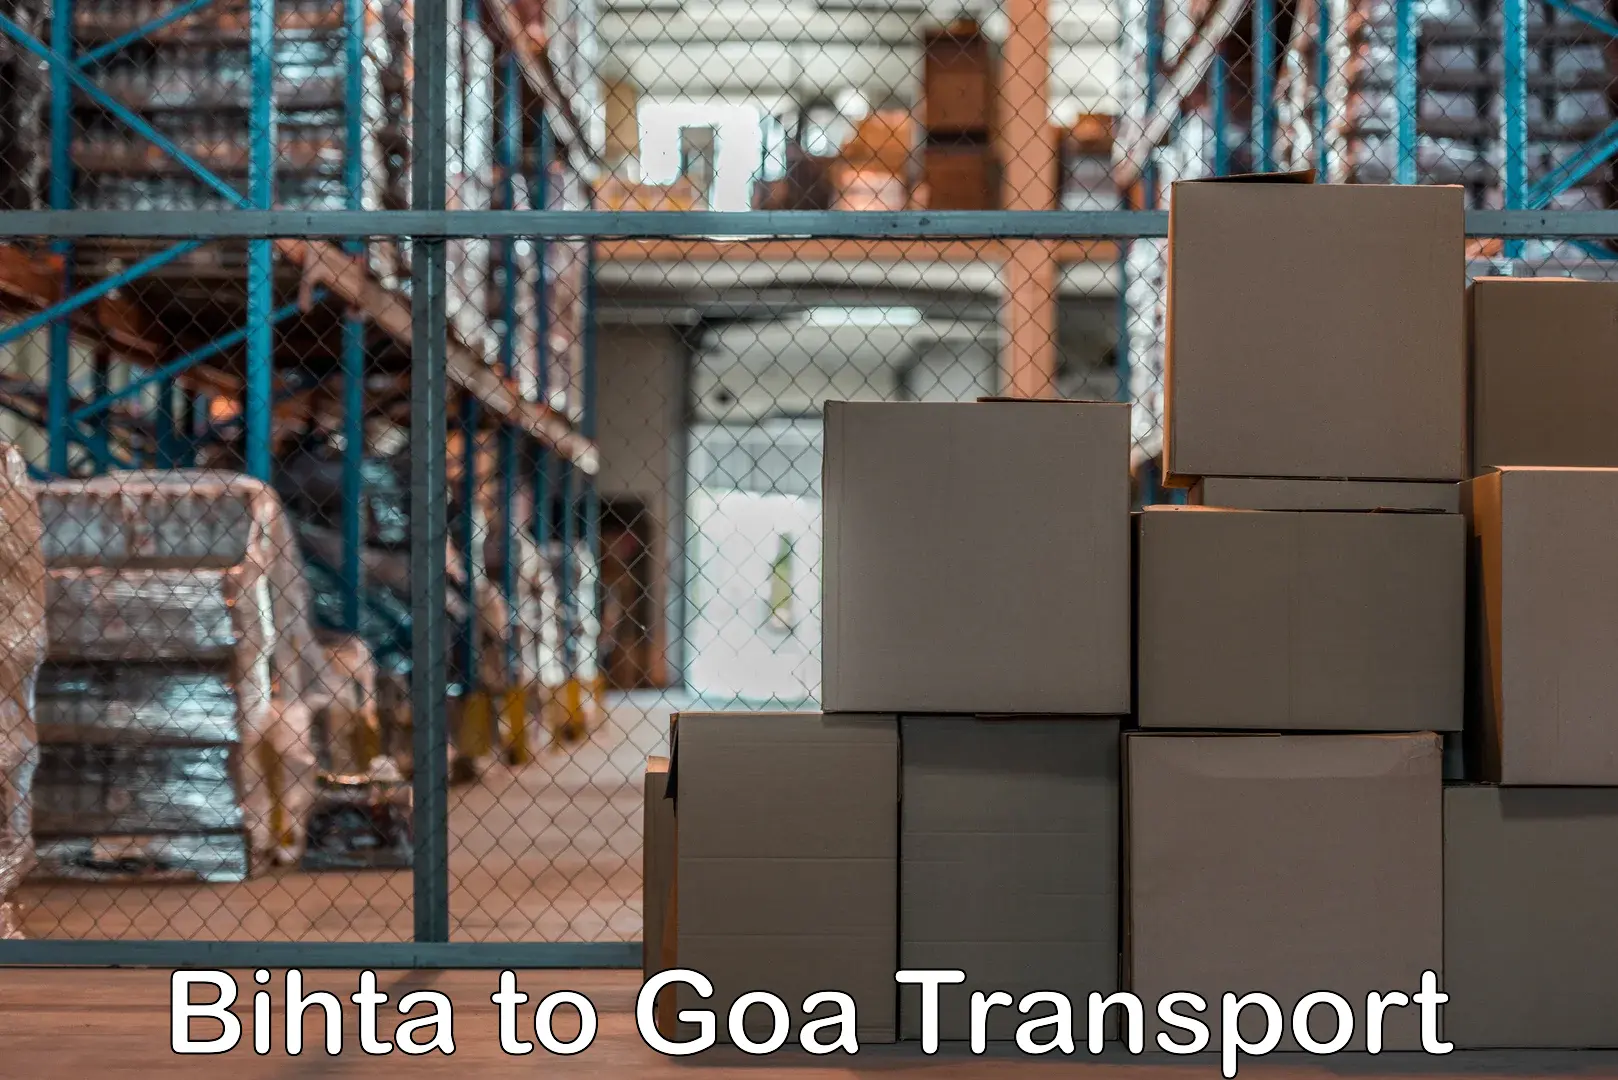 Online transport booking in Bihta to IIT Goa